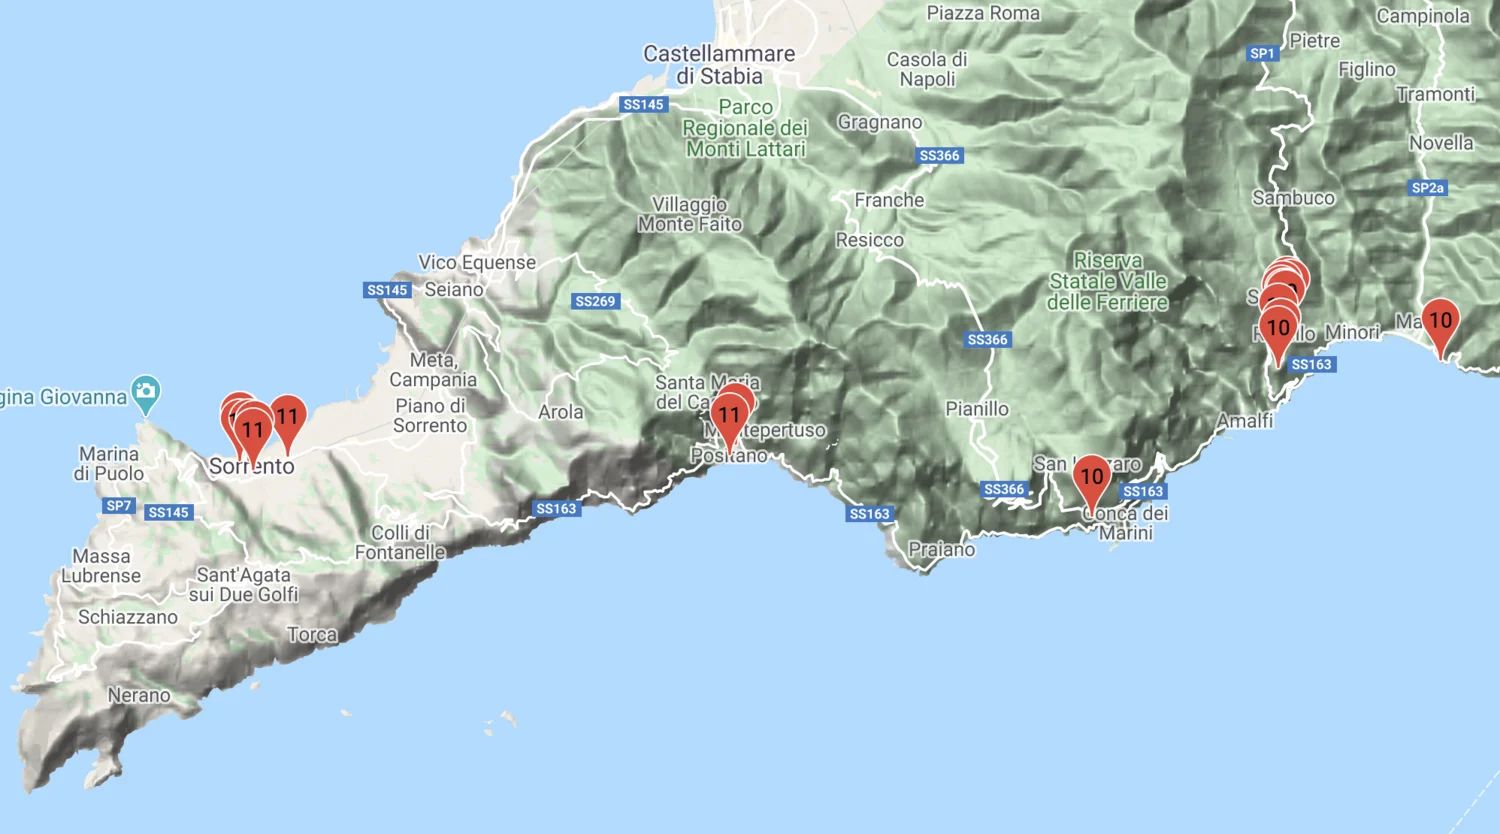 Start with Athens, Santorini, and then Crete. To Amalfi, Ravello, Sorrento and Naples.